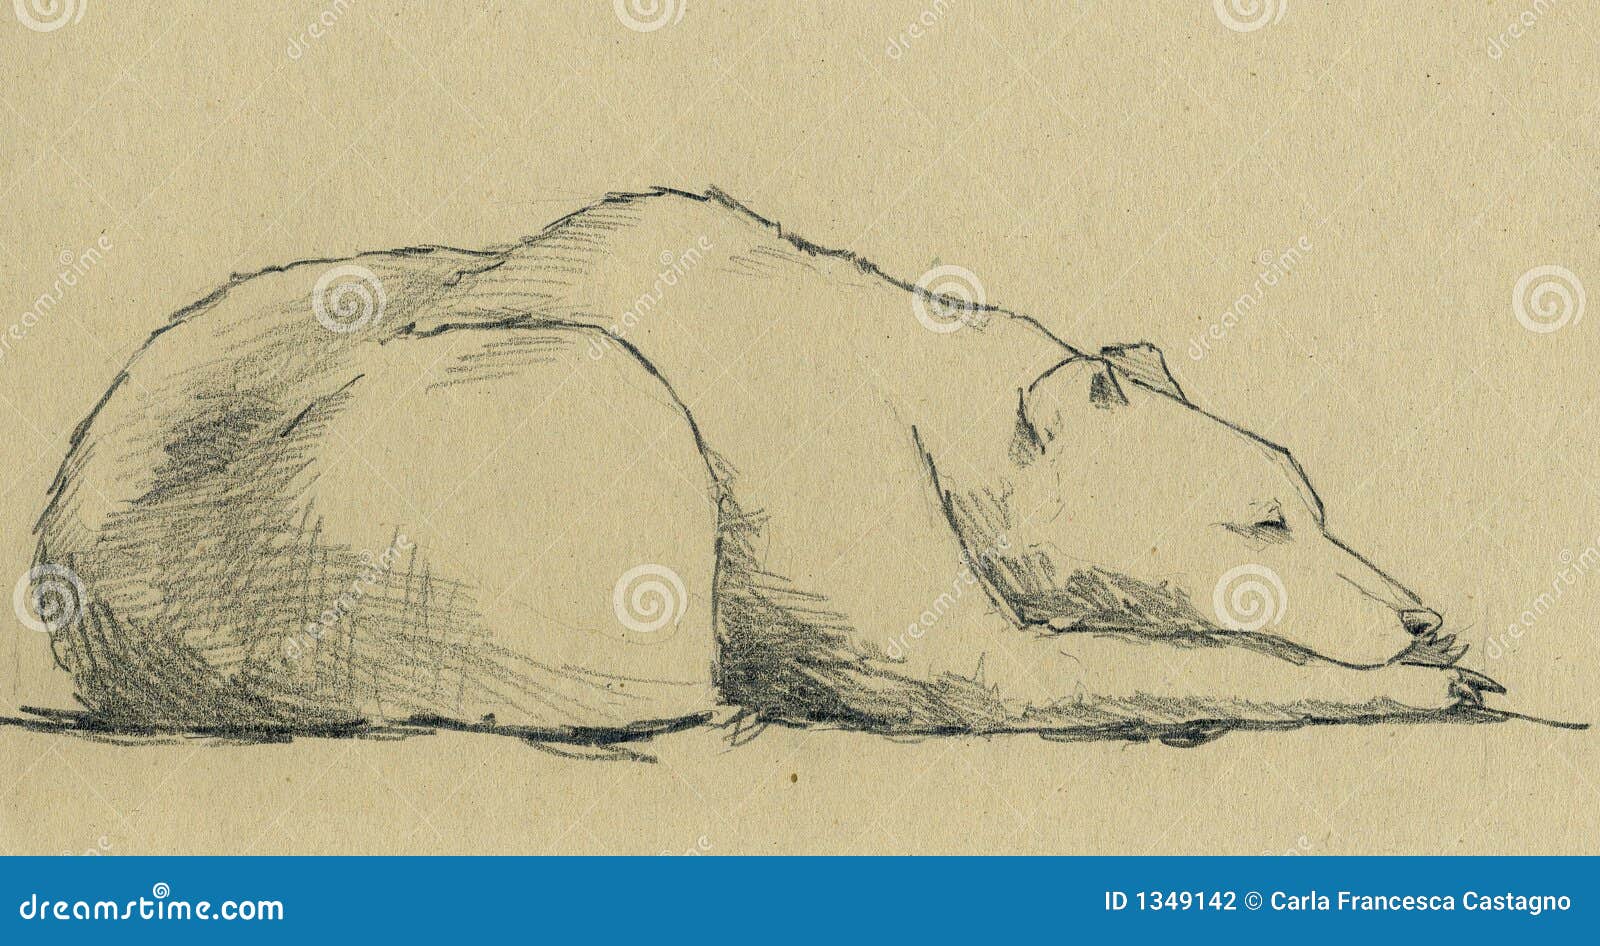 Sleeping Bear Drawings for Sale - Fine Art America